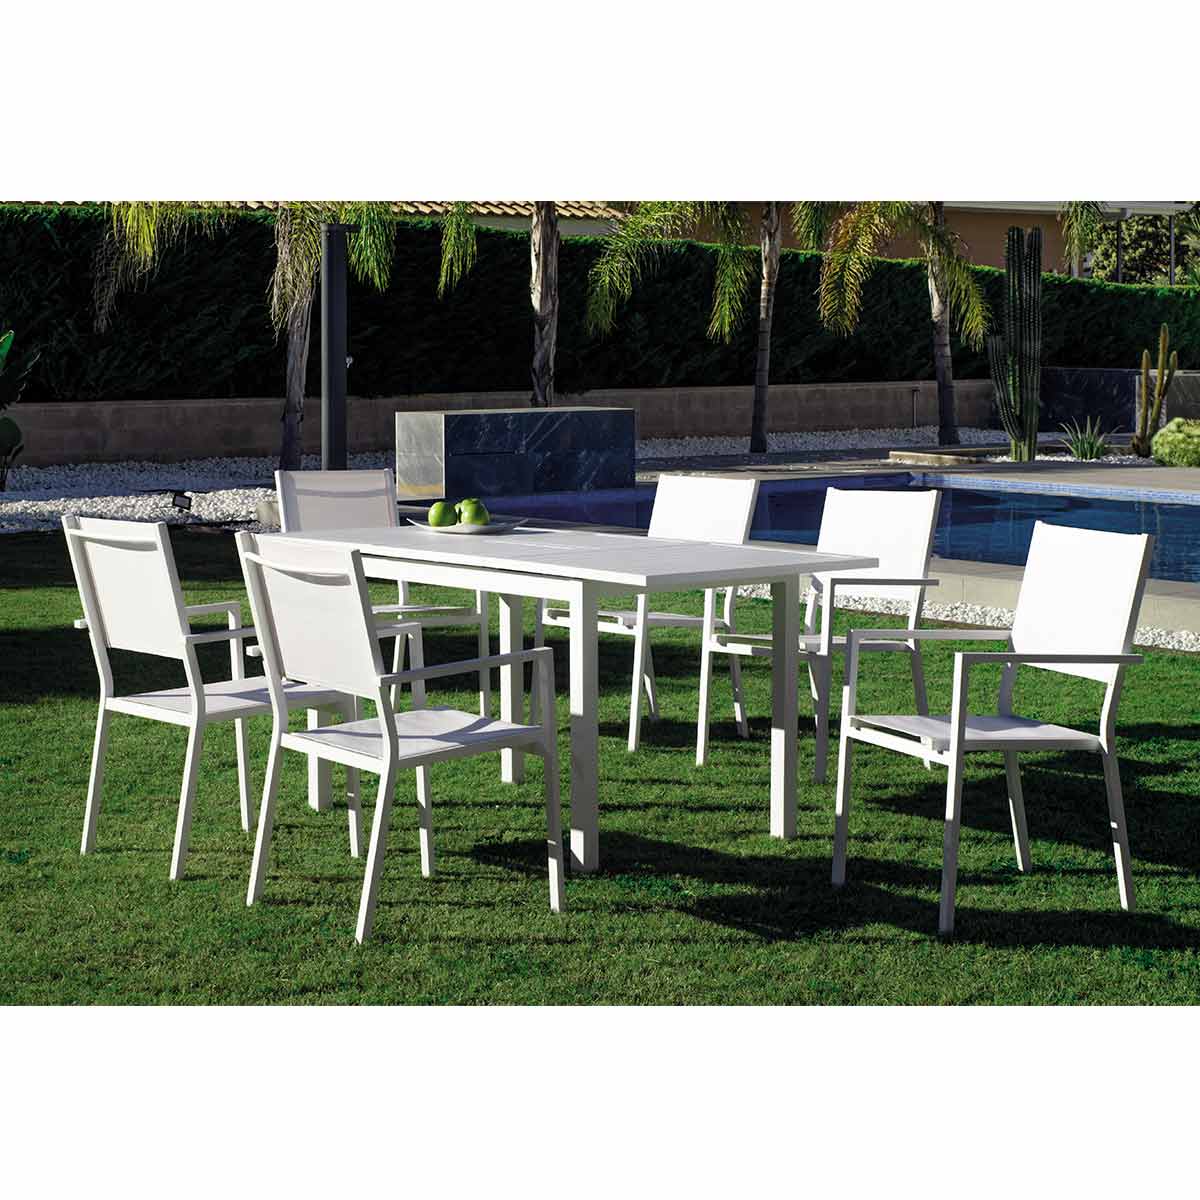 El set ideal para terrazas, con mesa extensible - Muebles Jardín 